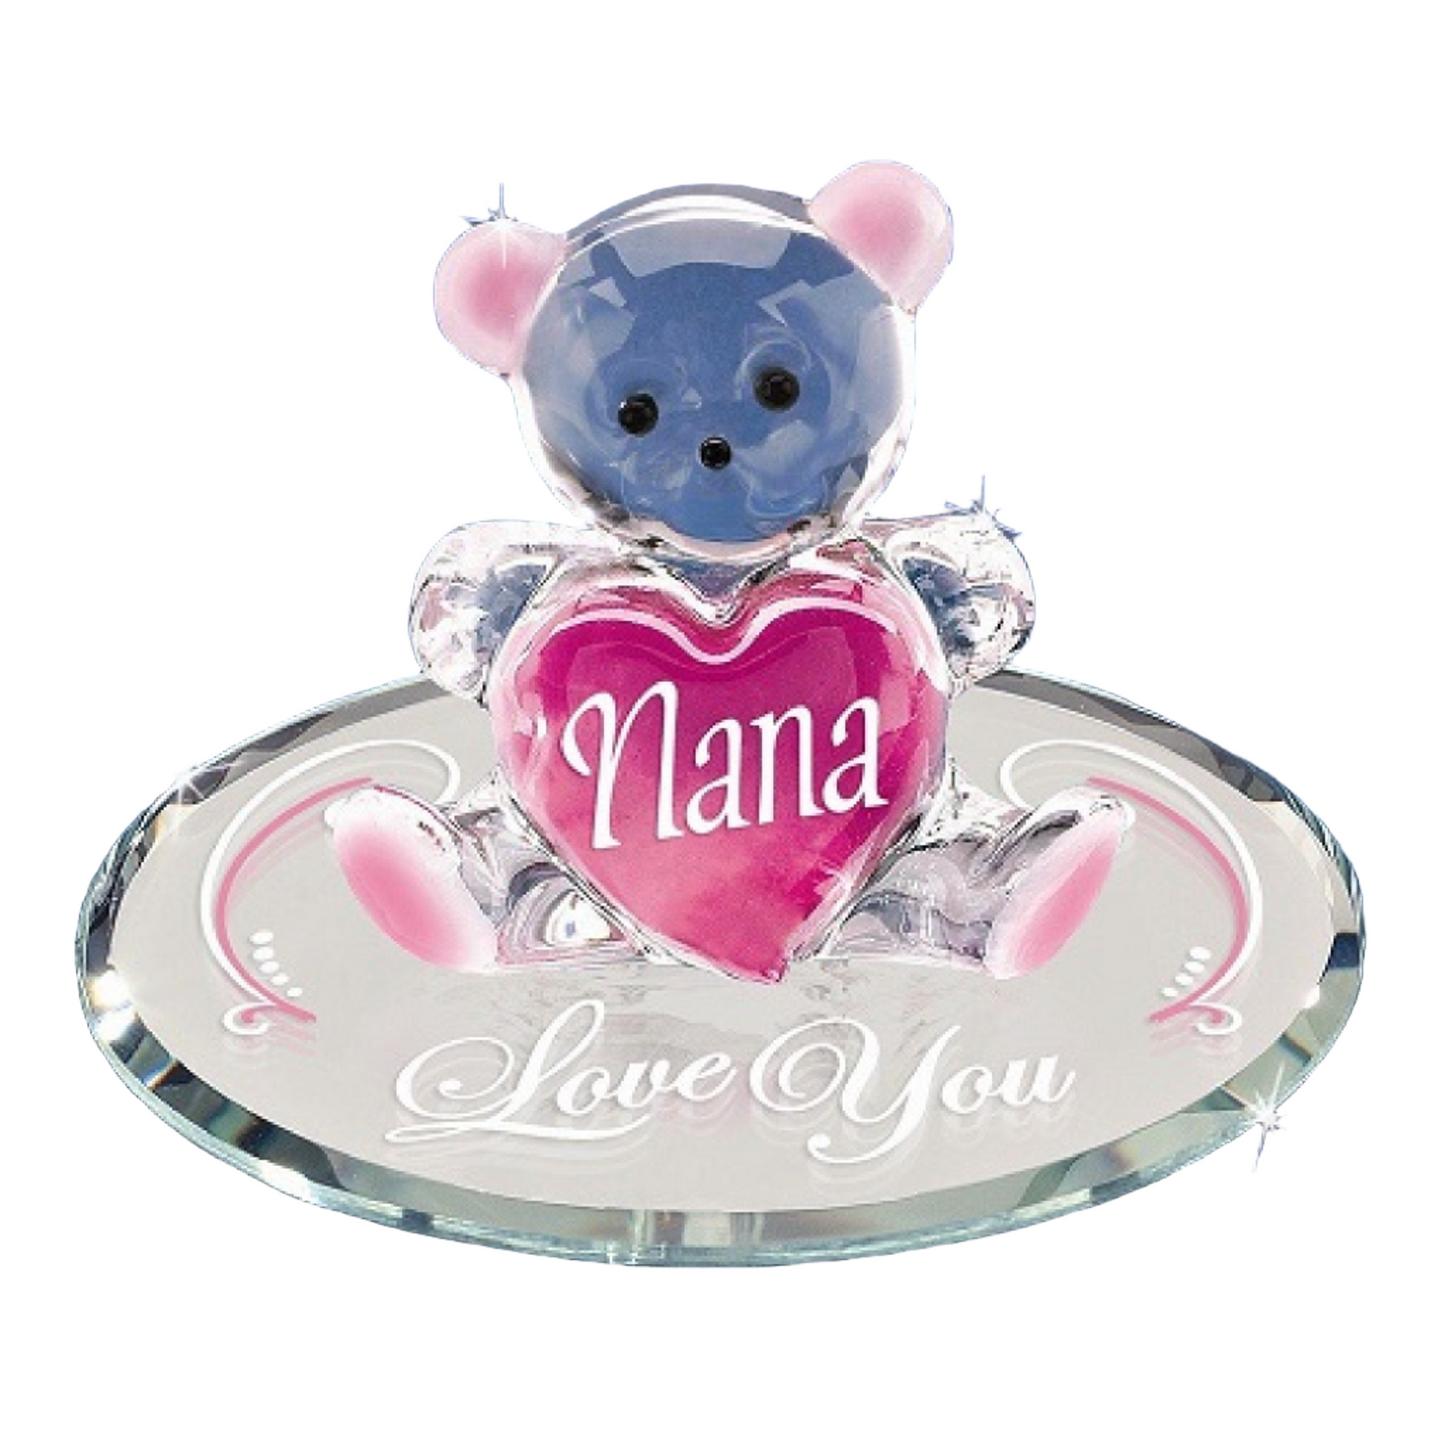 Glass Baron "Nana, I Love You" Bear Pink Figure